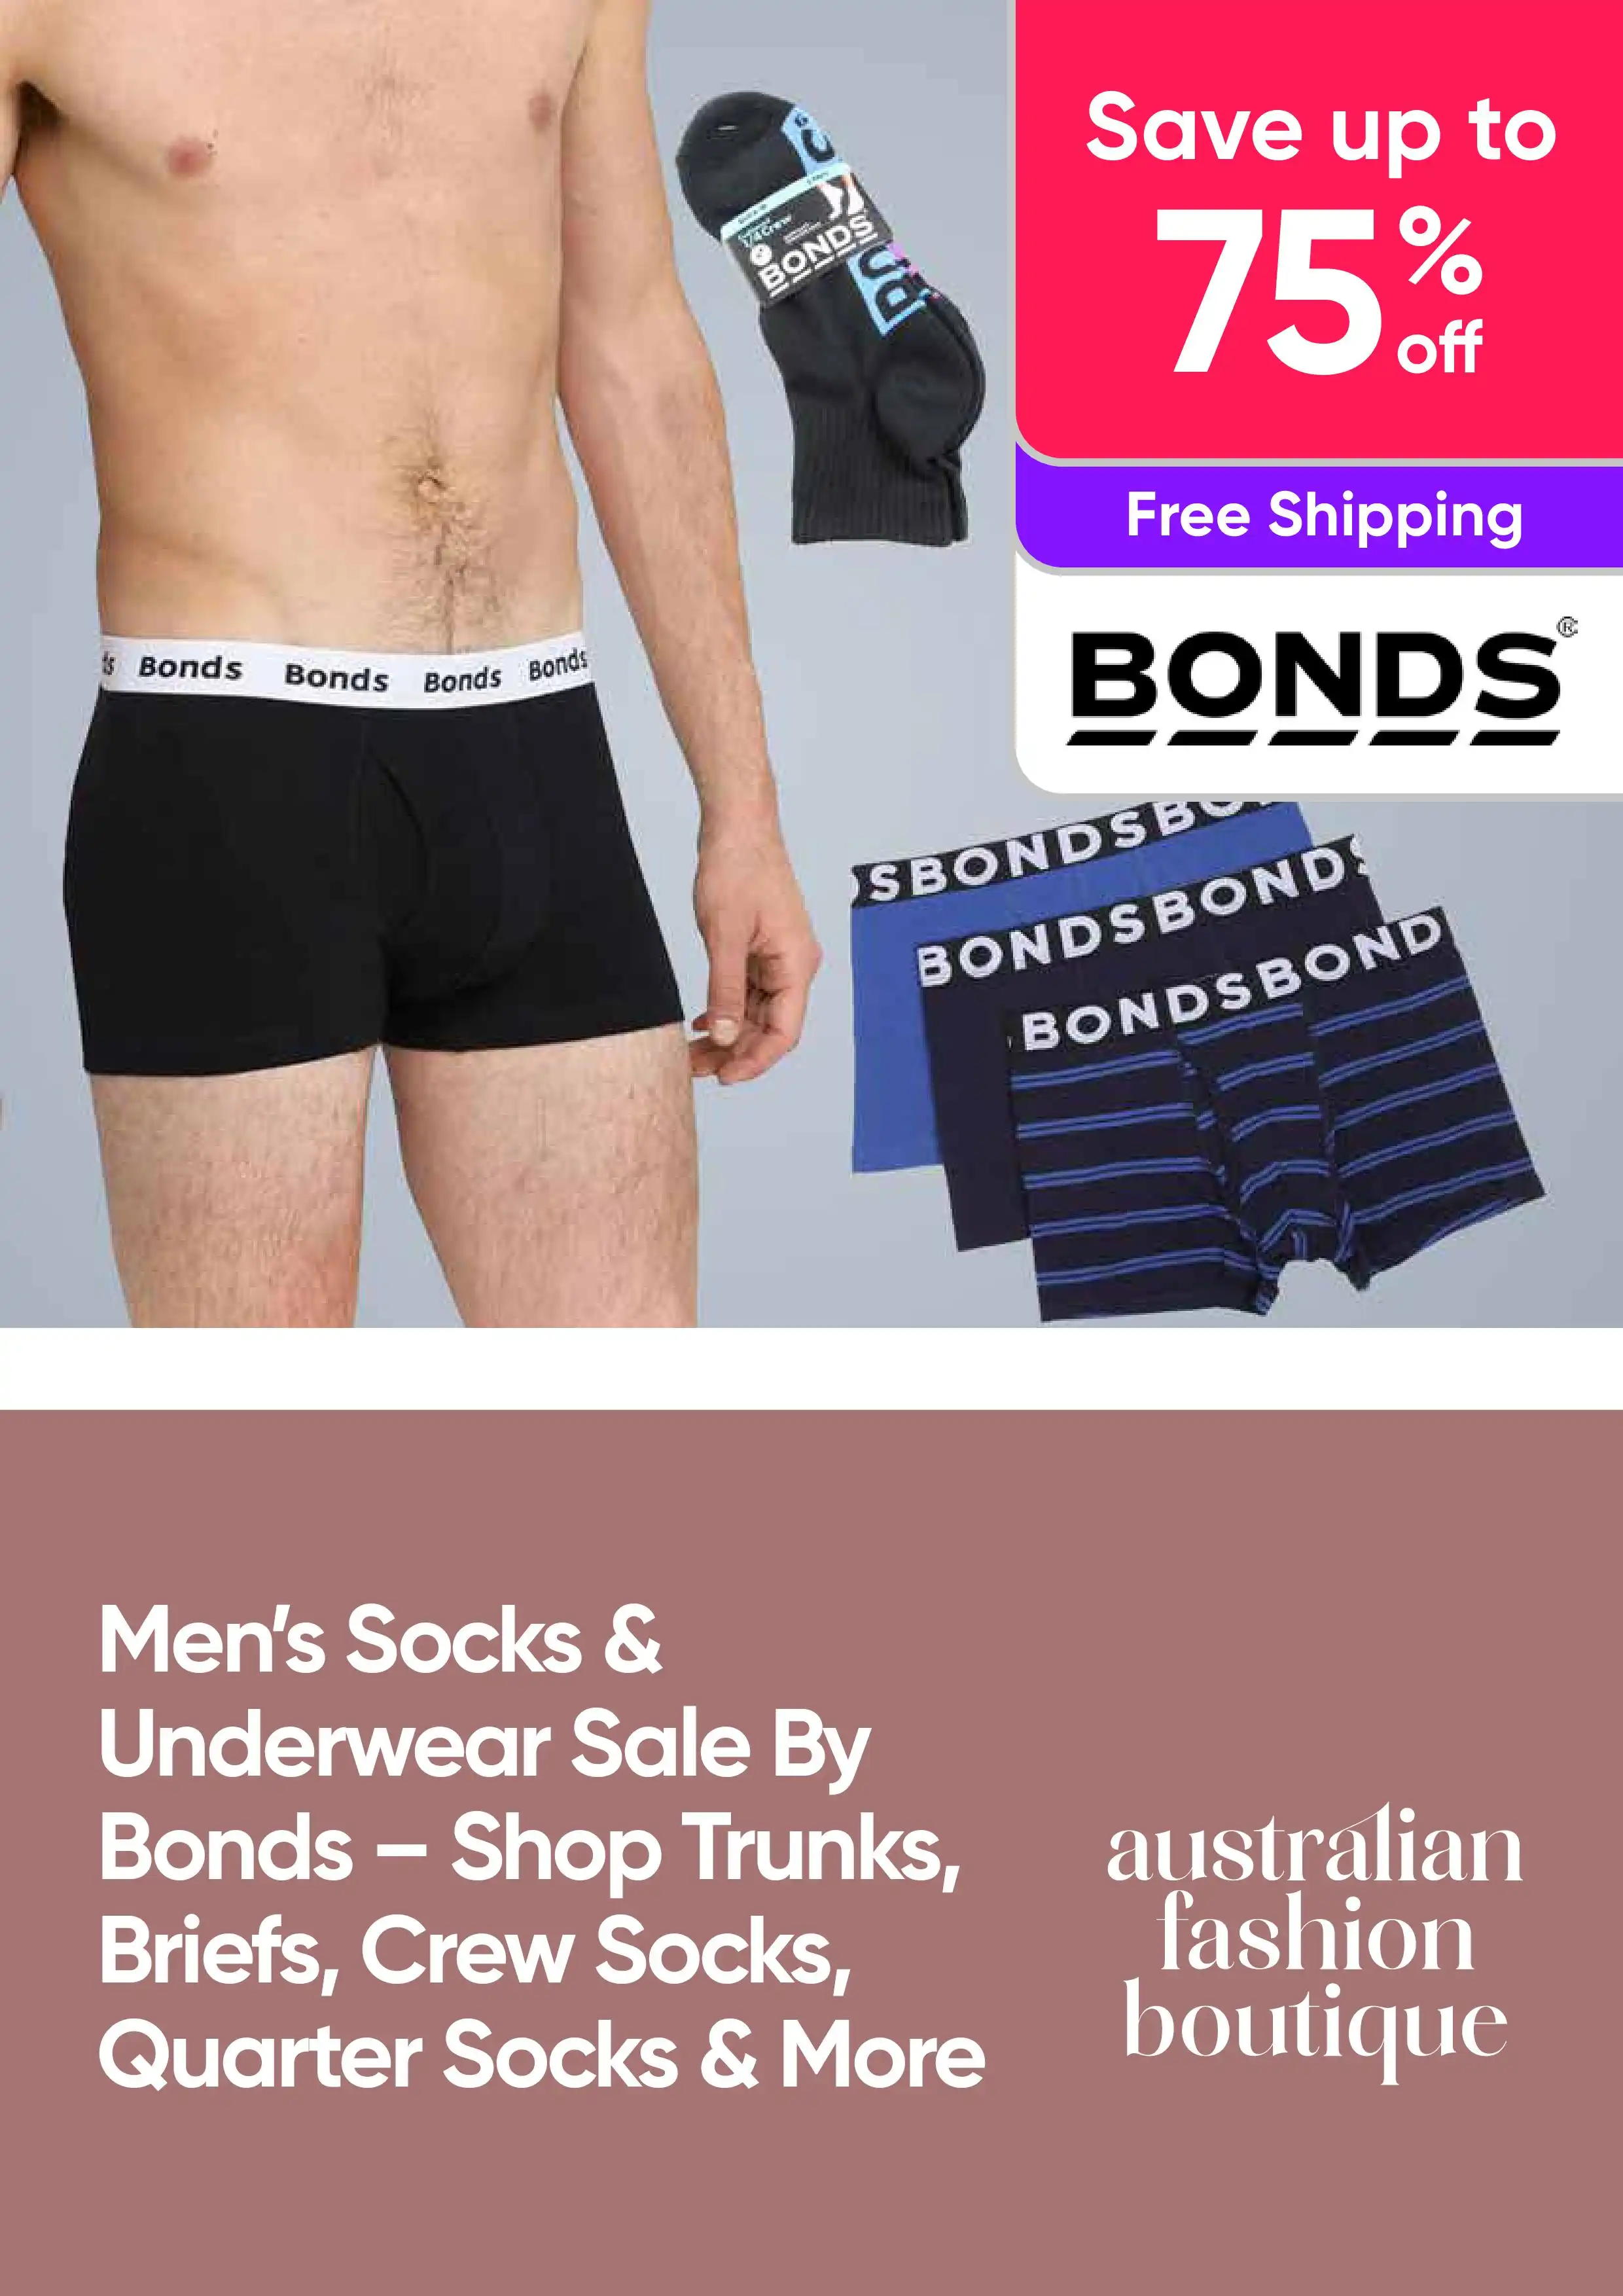 Men's Underwear for sale